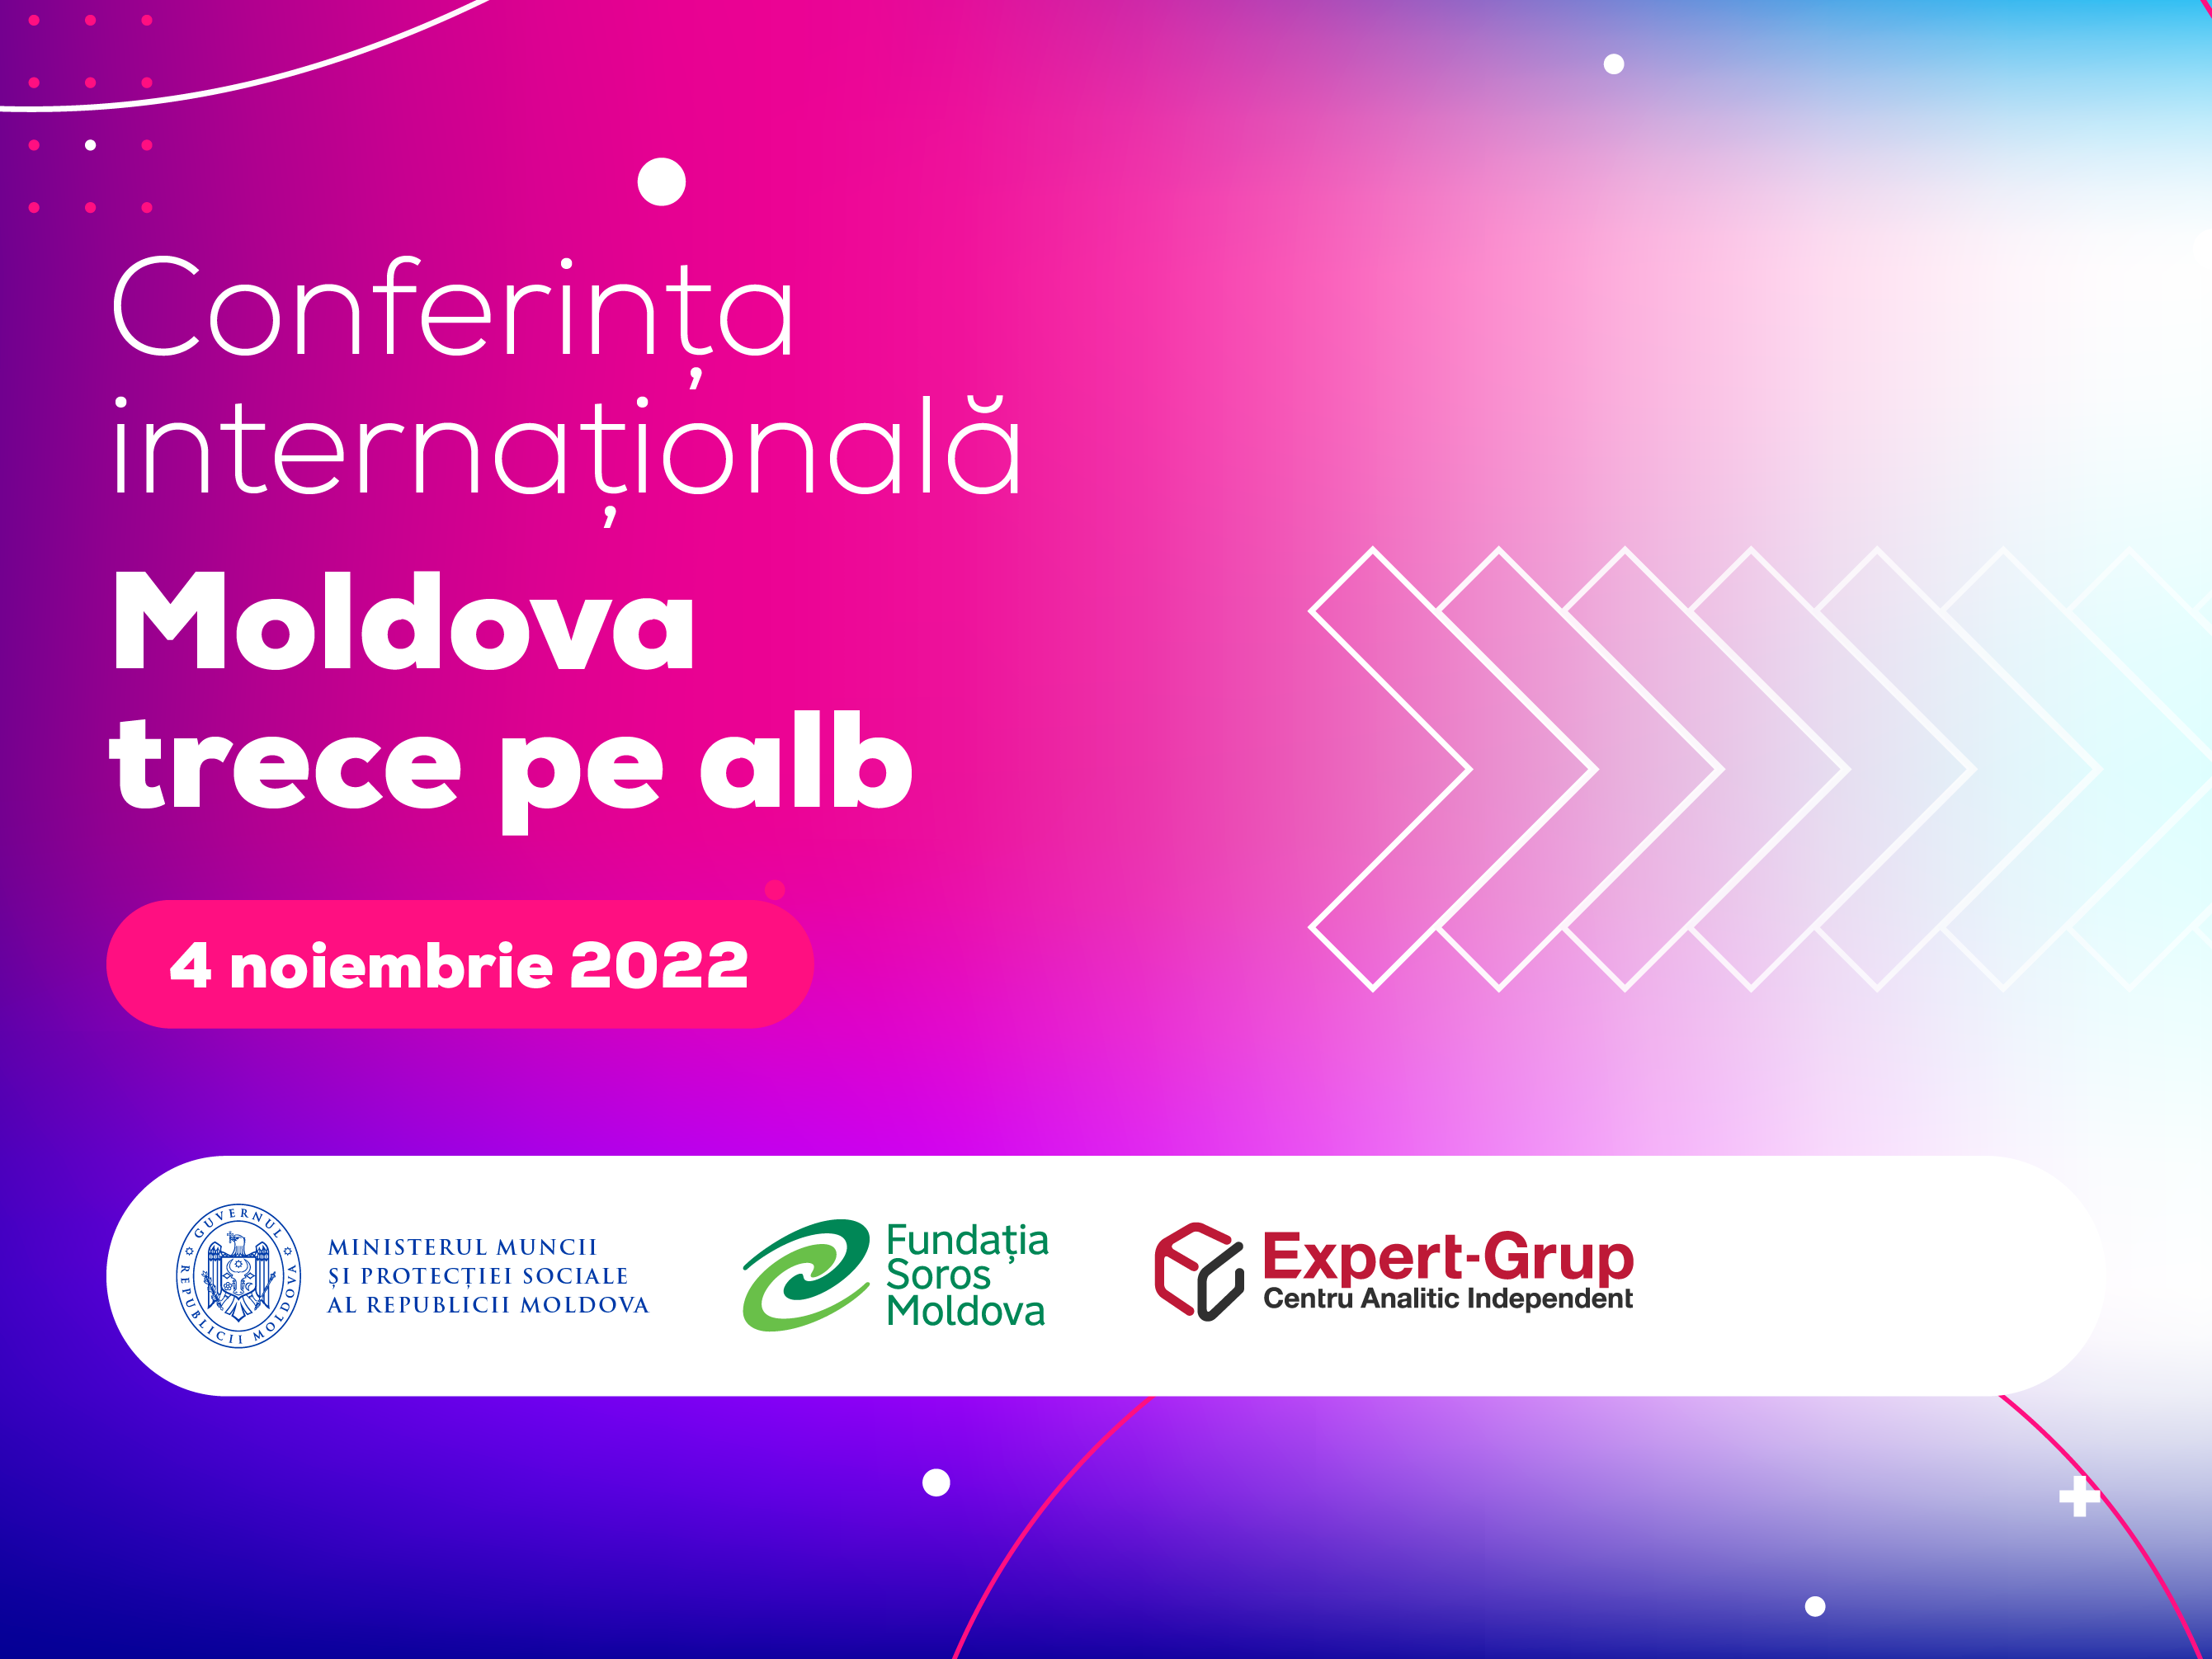 Conferința internațională „Moldova trece pe alb: soluții pentru încurajarea tranziției spre munca legală”, organizată în premieră în Republica Moldova